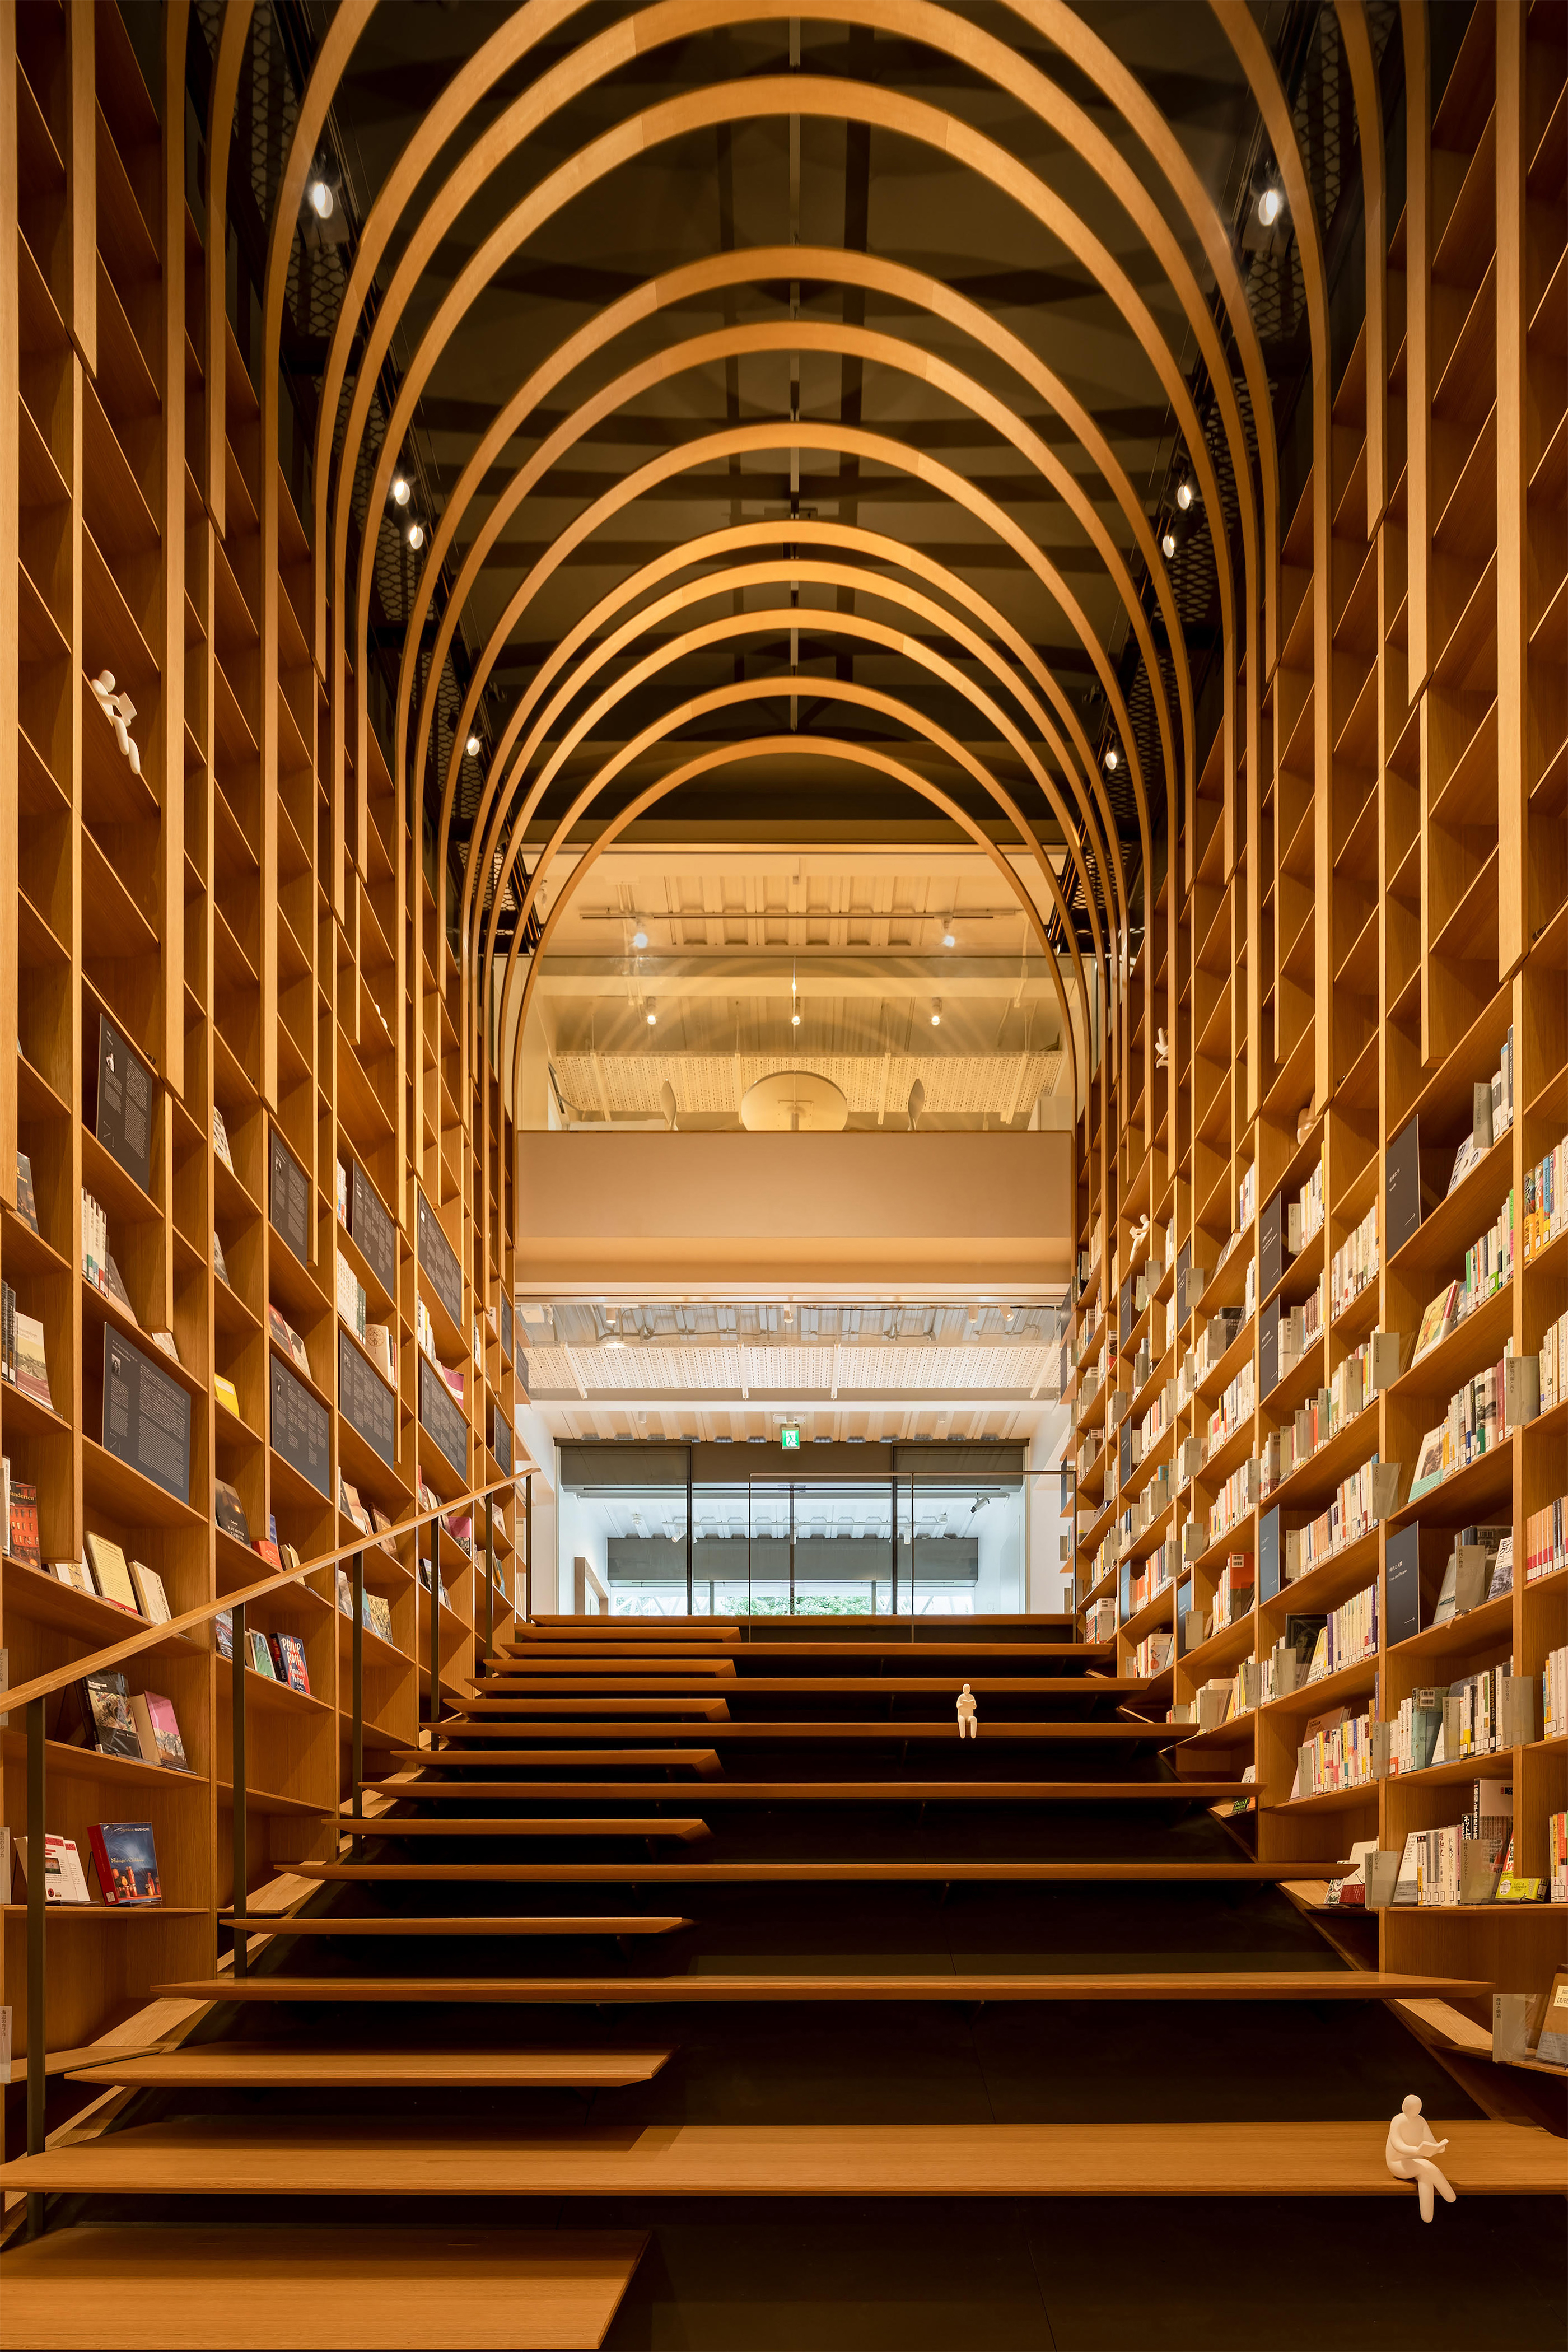 The Waseda International House of Literature (The Haruki Murakami Library)